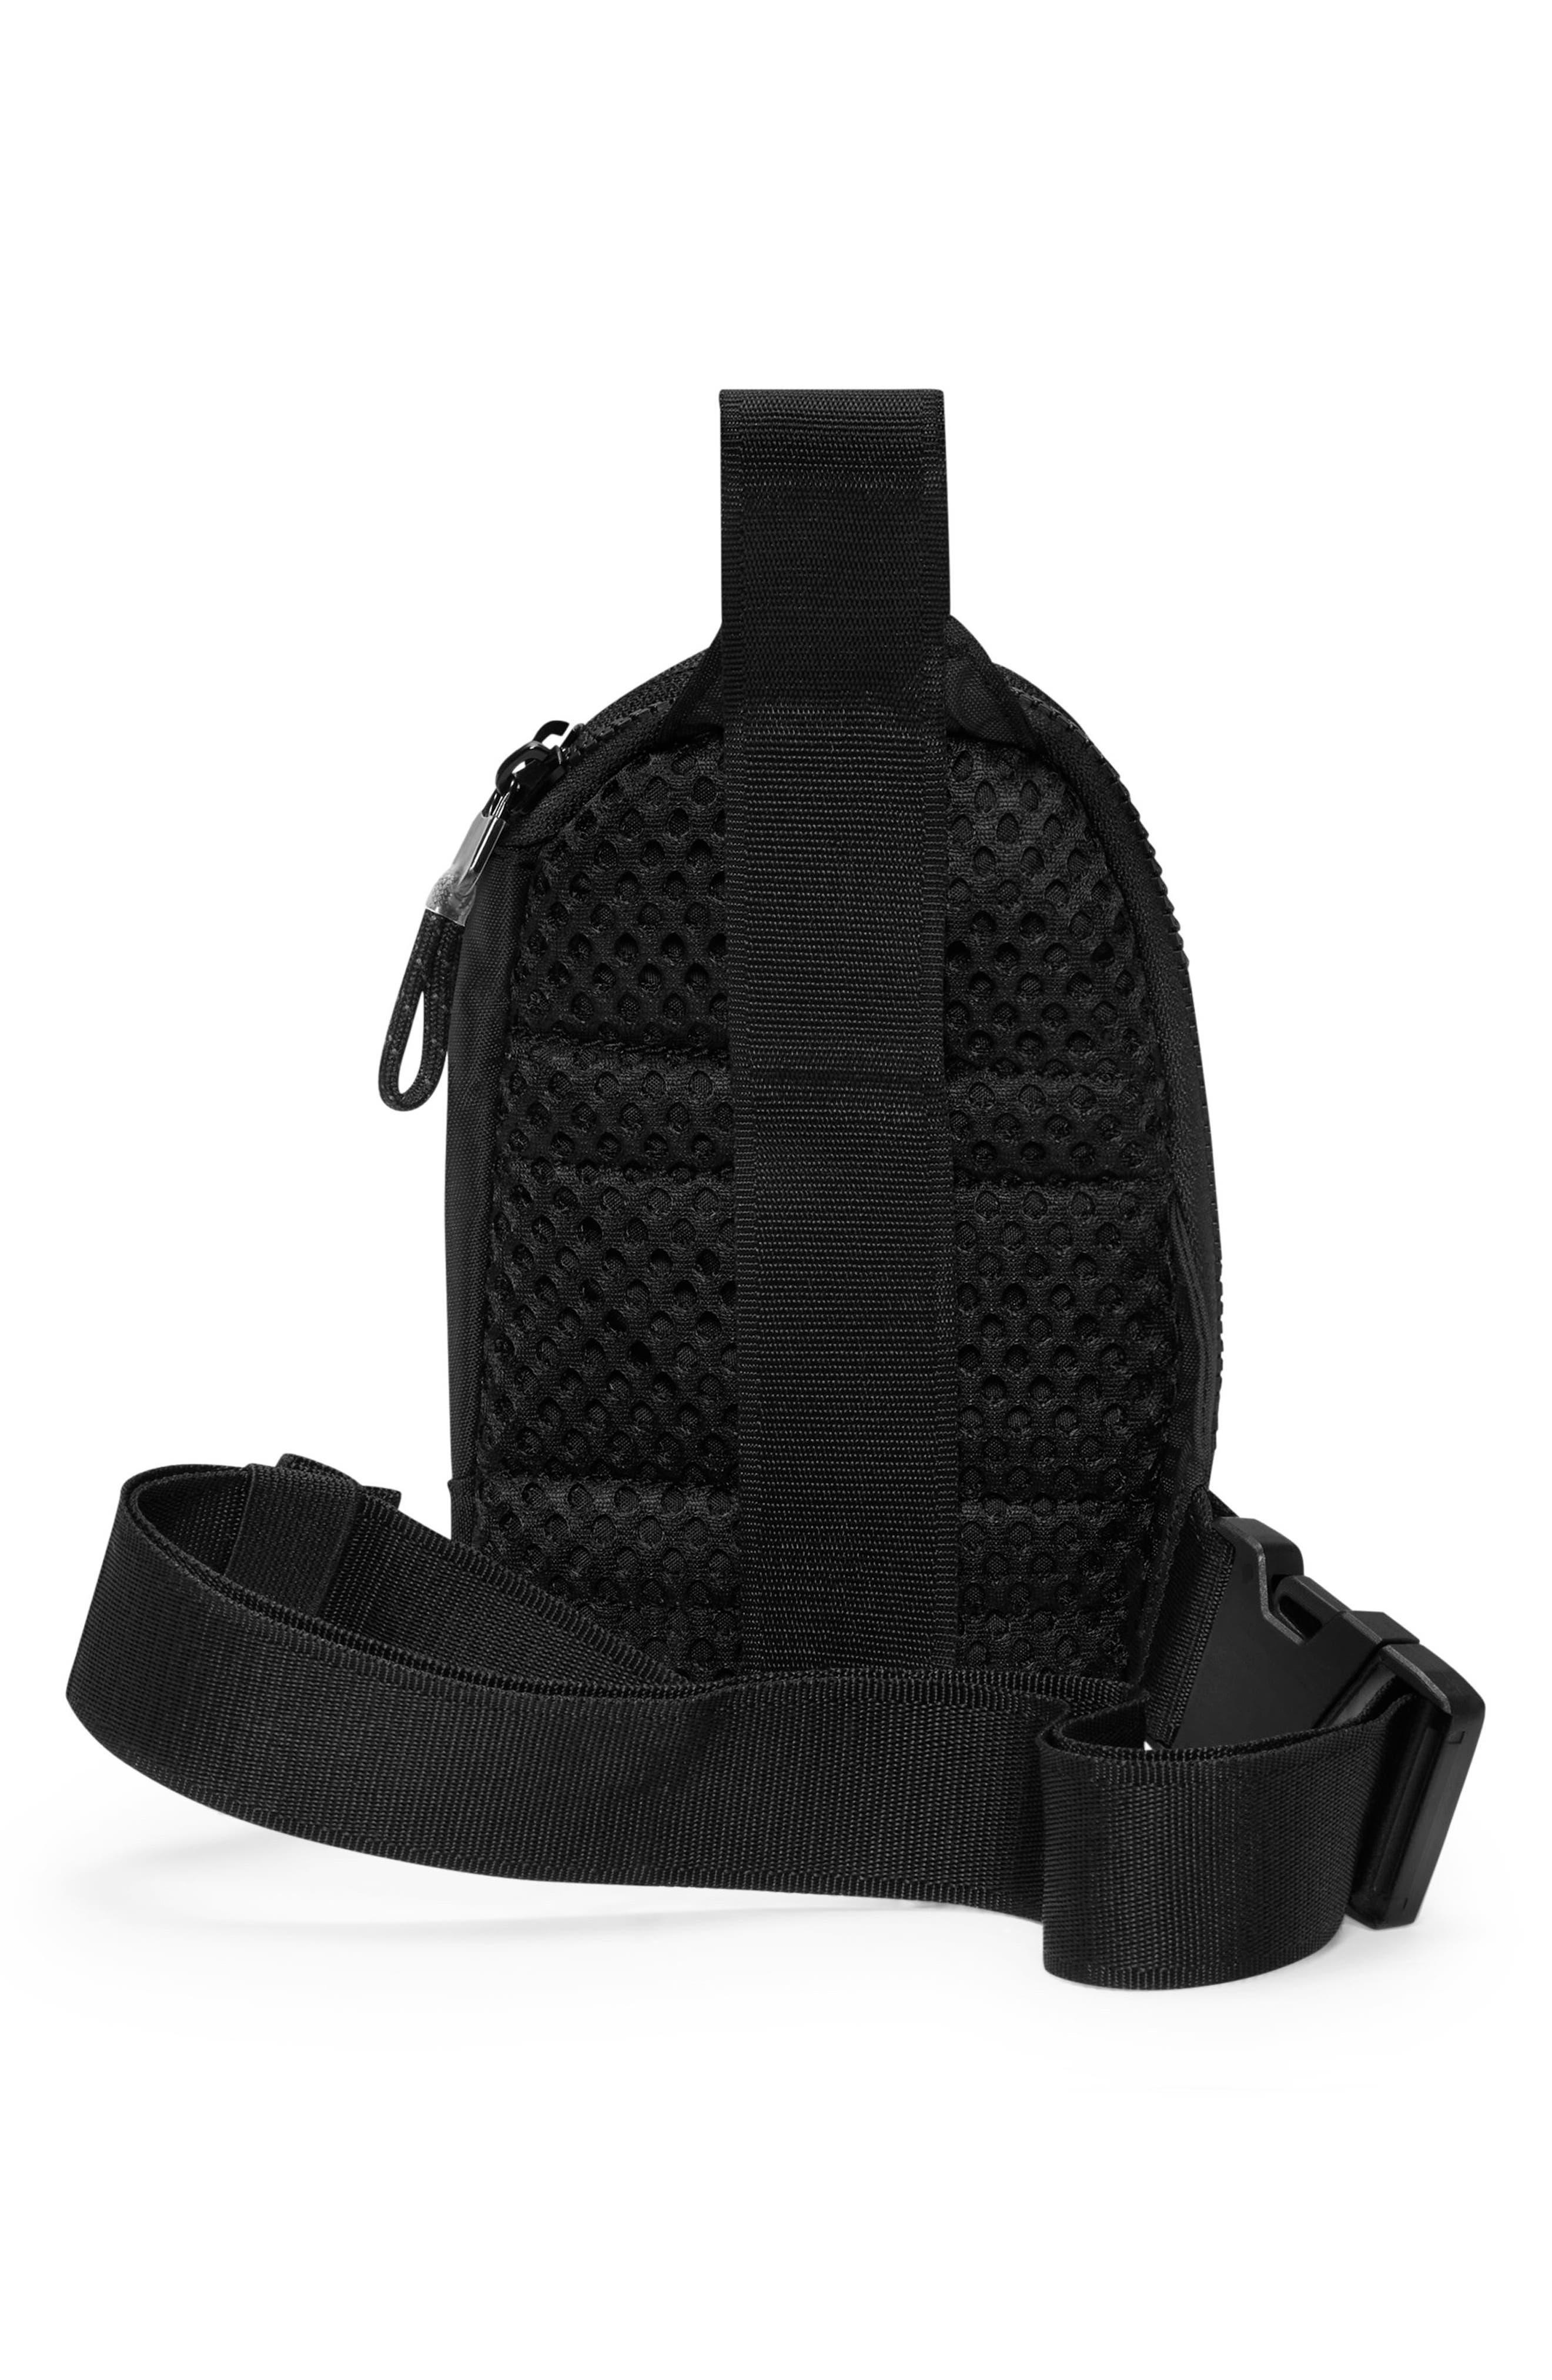 Nike Men's Sportswear Essentials Crossbody Bag Black/Black' : .in:  Fashion